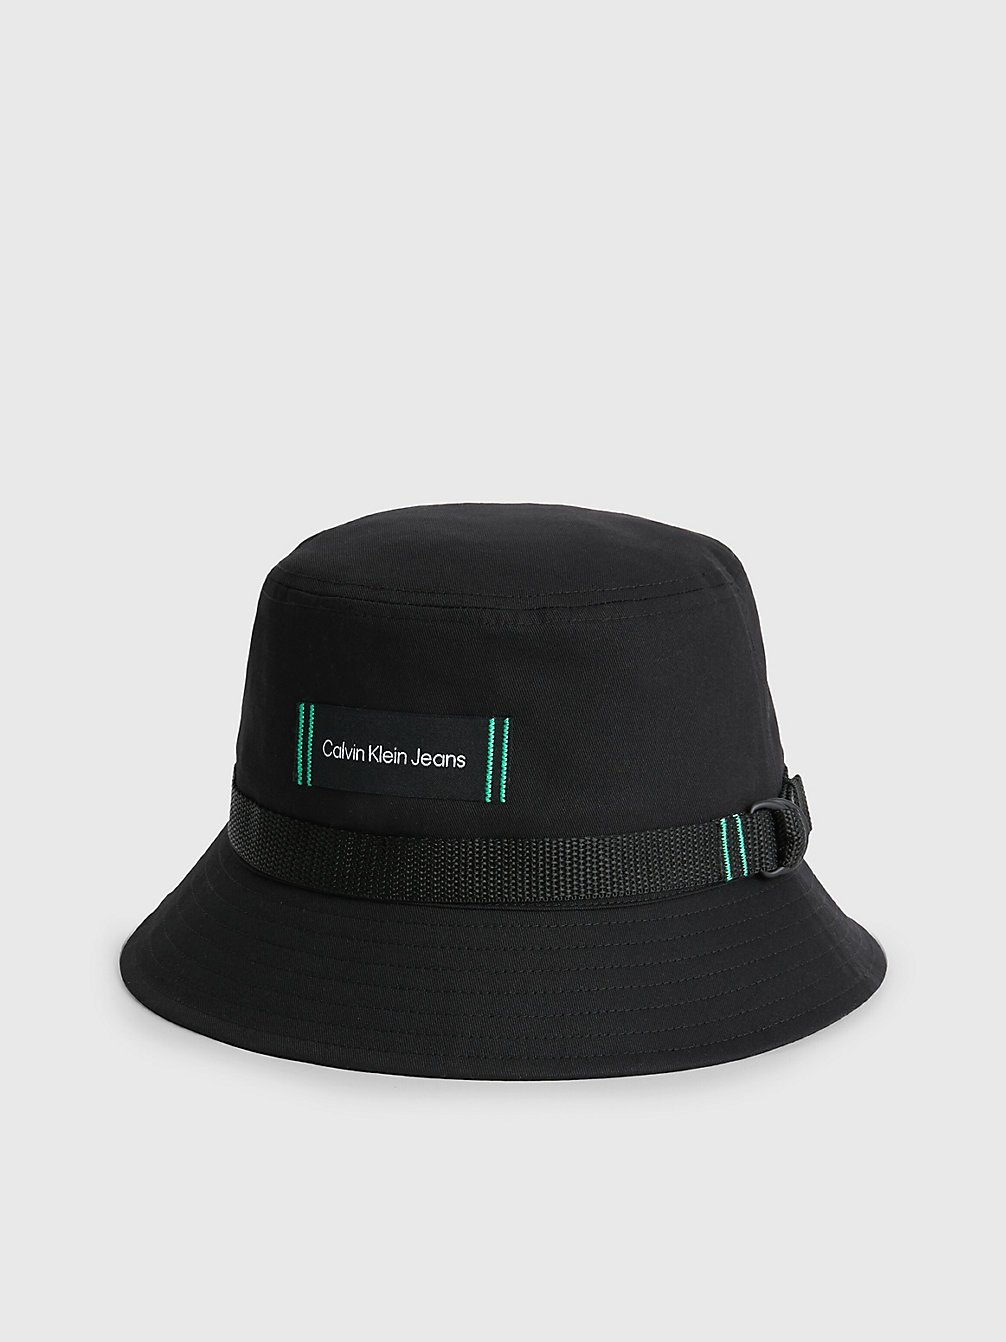 BLACK > Składany Kapelusz Typu Bucket Hat Z Bawełny Organicznej > undefined Mężczyźni - Calvin Klein